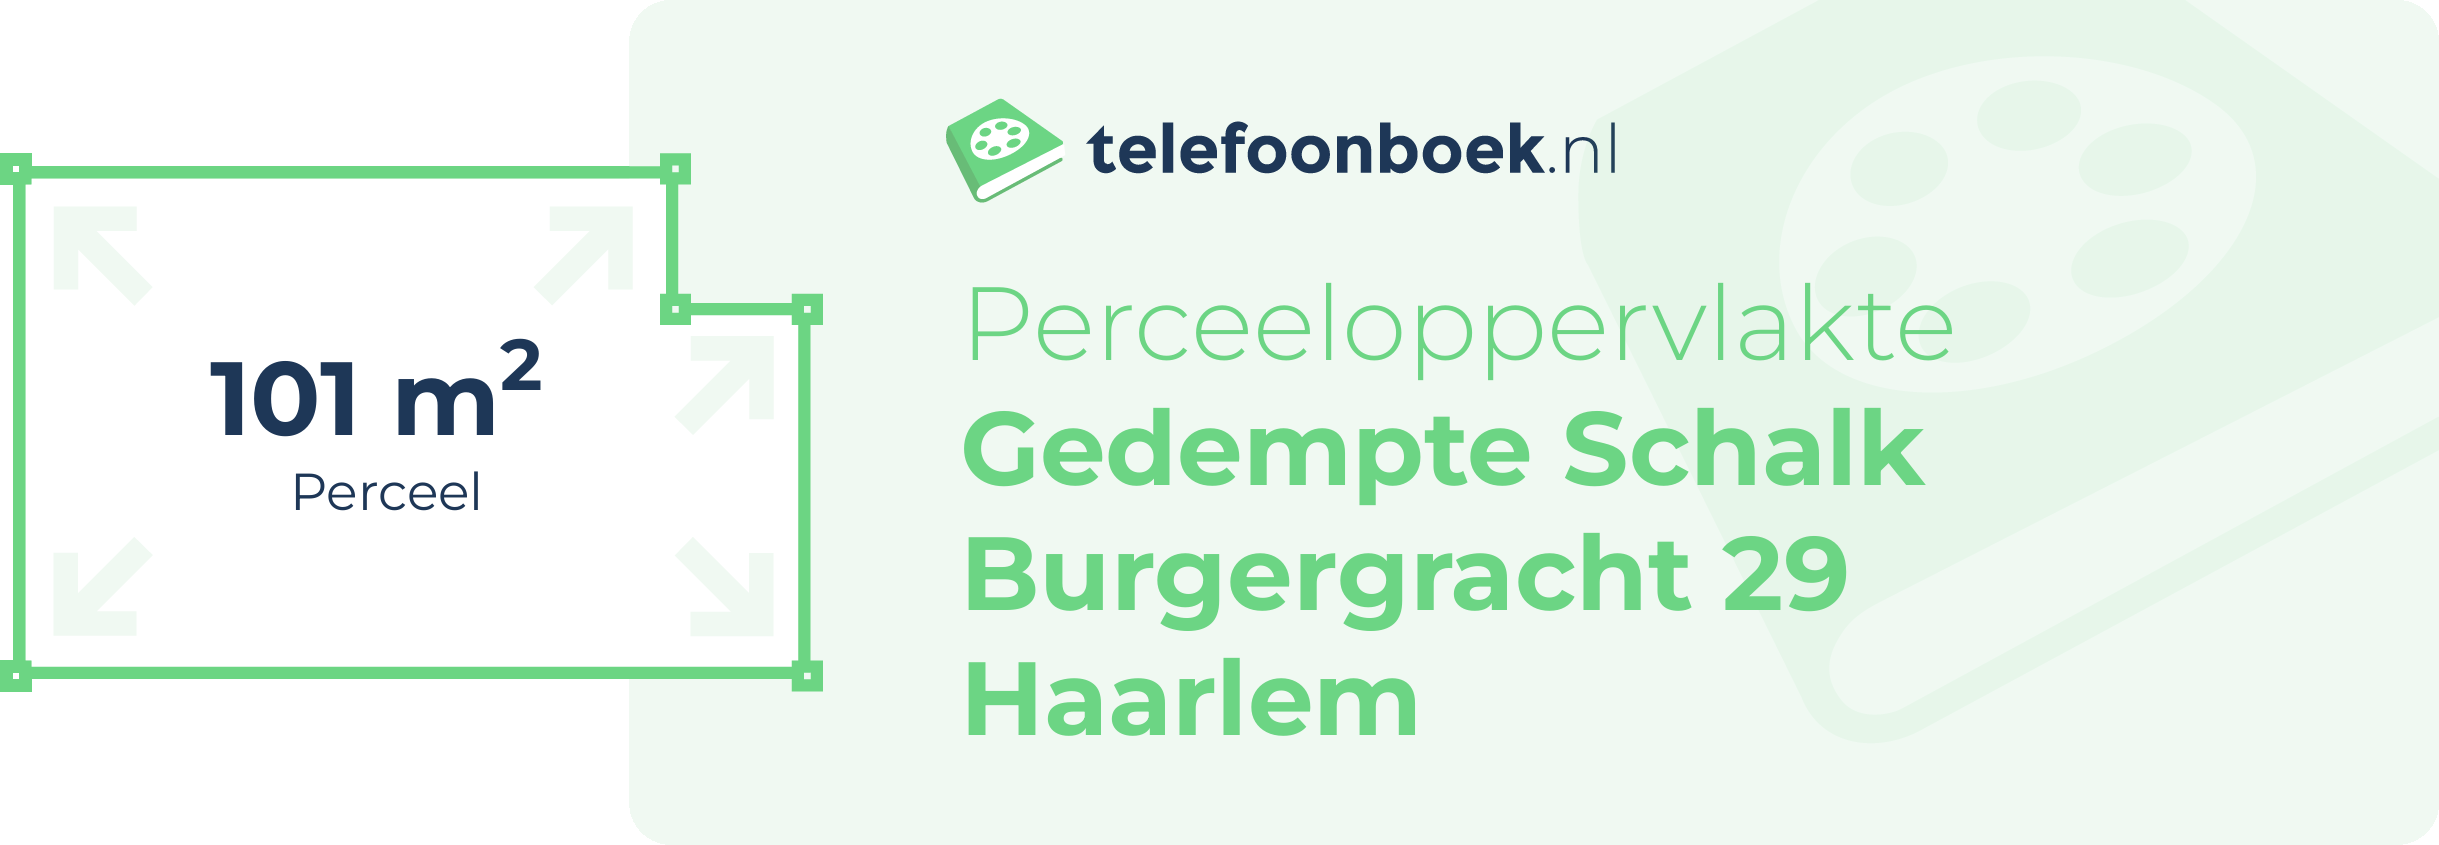 Perceeloppervlakte Gedempte Schalk Burgergracht 29 Haarlem